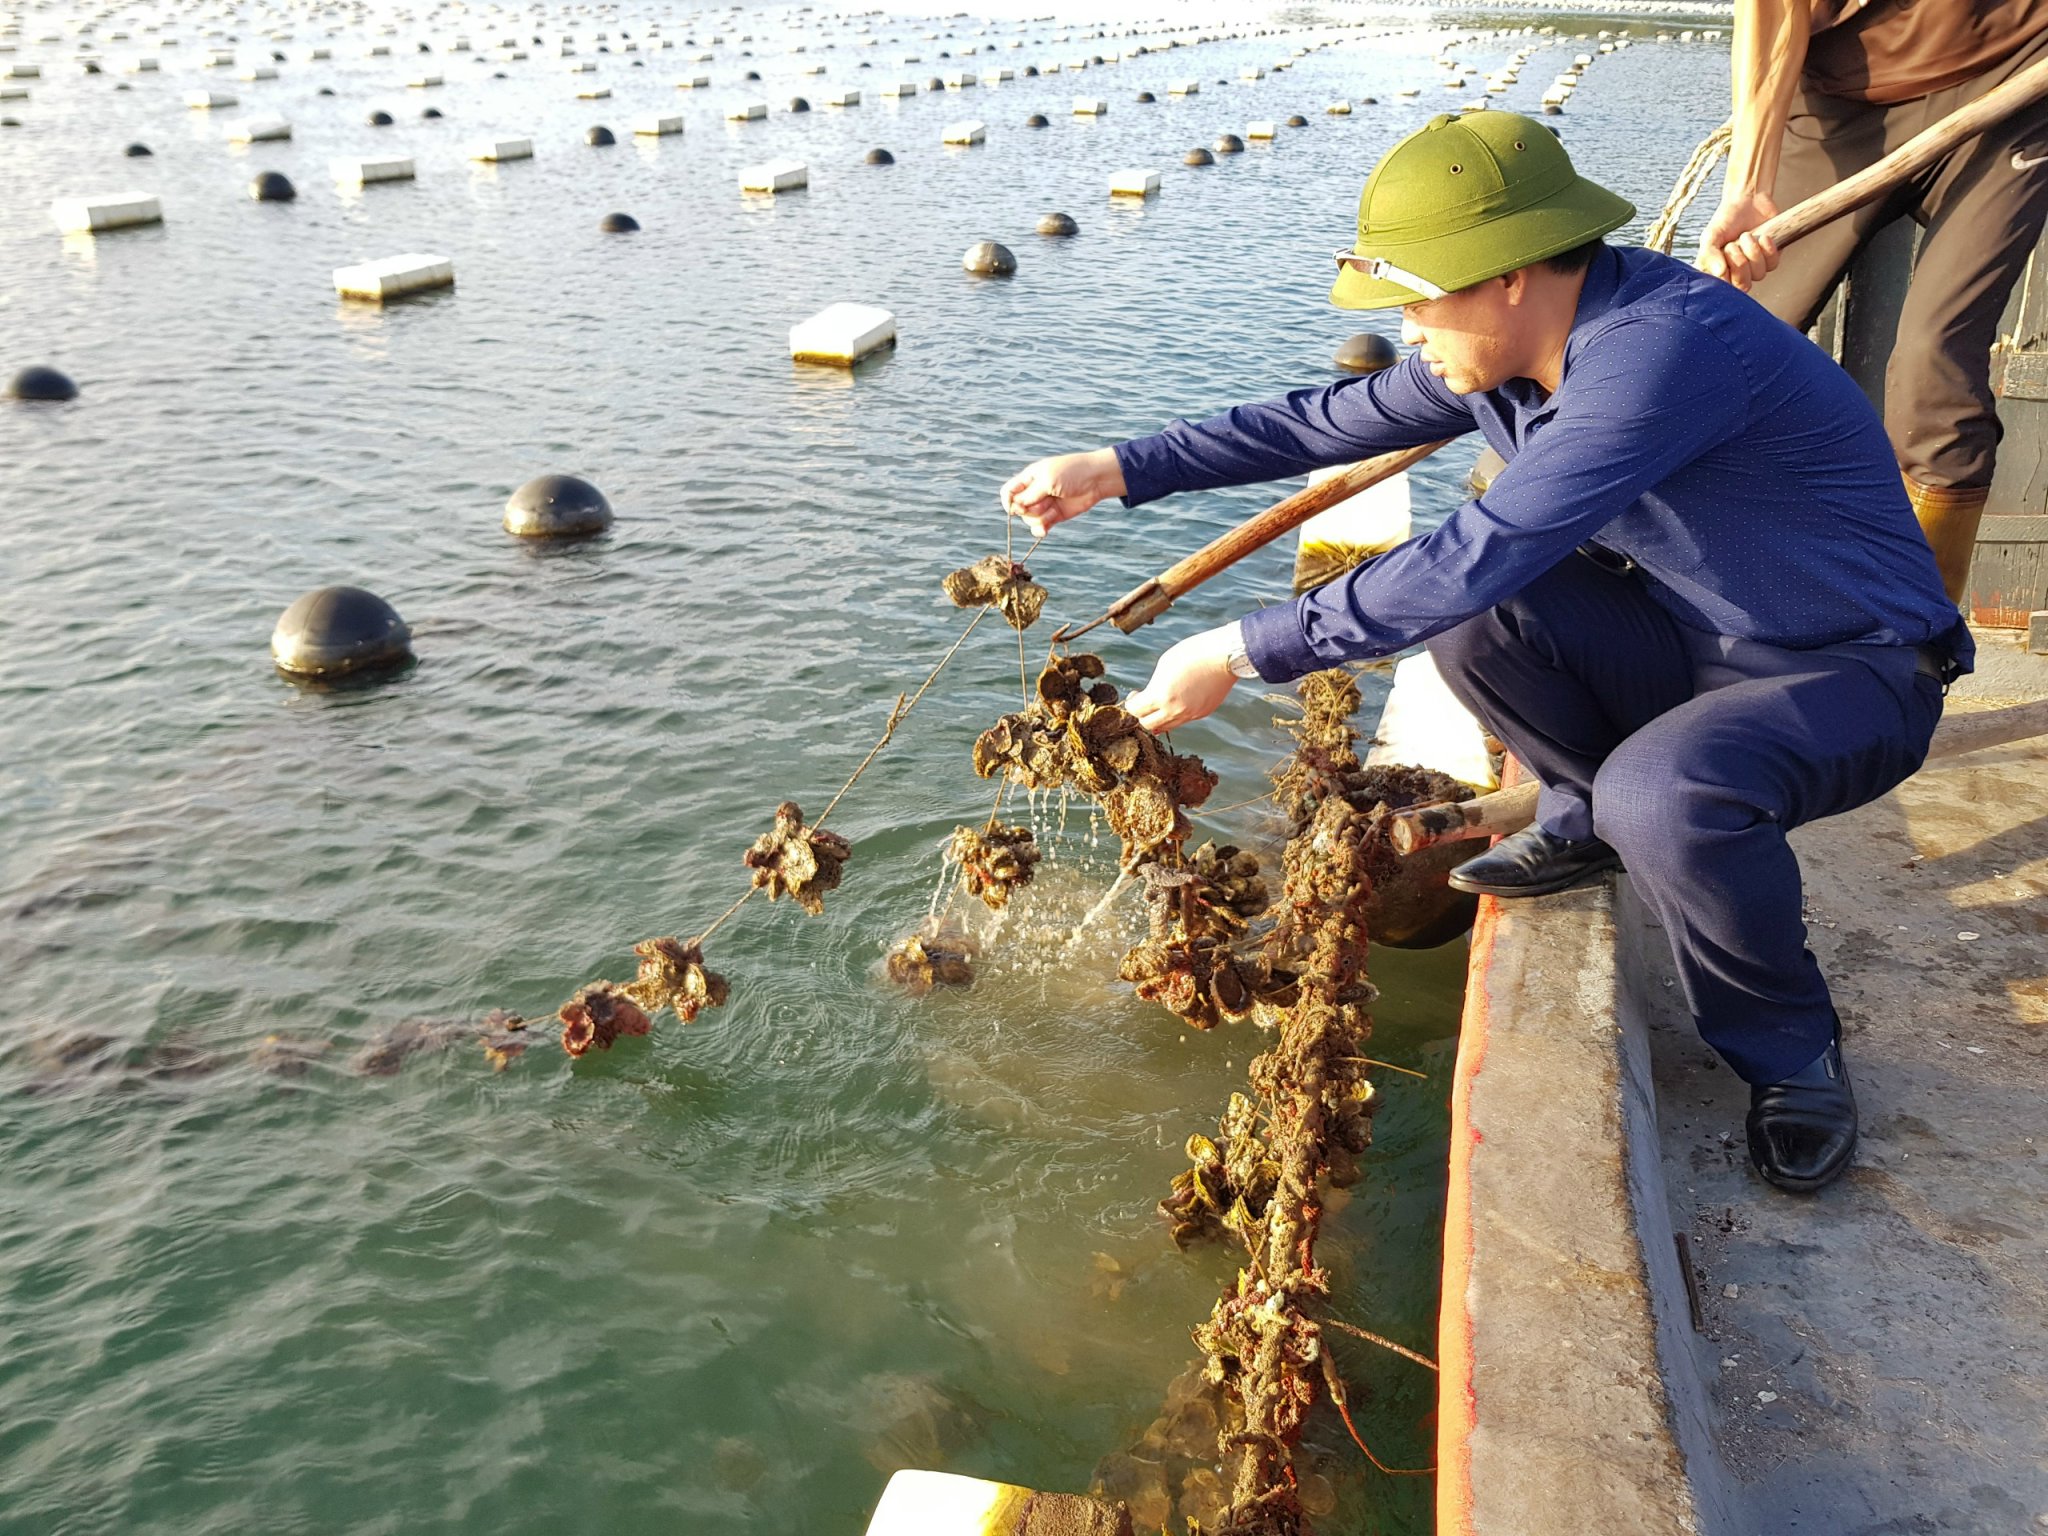 Lãnh đạo Chi cục Thủy sản, Sở NN&PTNT, kiểm tra tình hình nuôi trồng thủy sản của người dân tại Vân Đồn. Ảnh: Thanh Hoa.